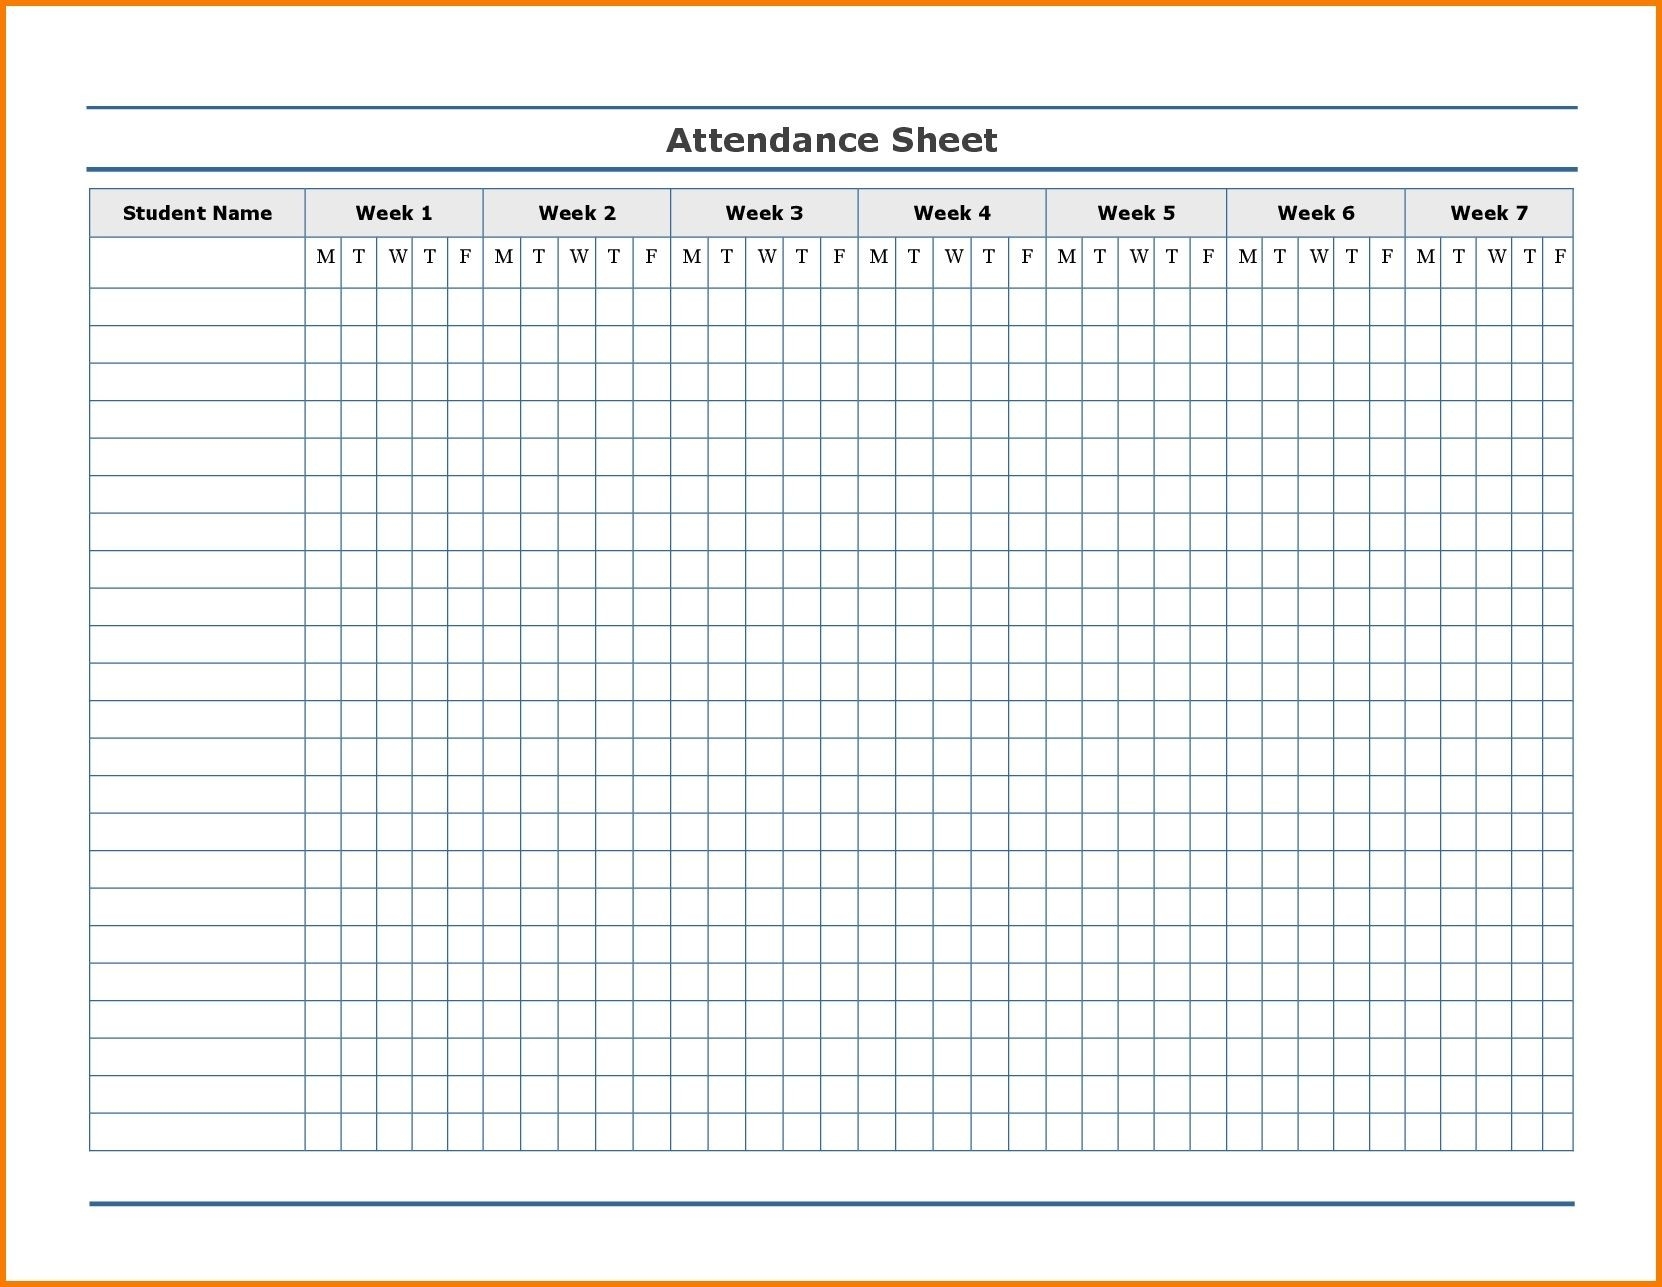 Free Employee Attendance Calendar | Employee Tracker-Free Printable 2021 Attendance Calendar